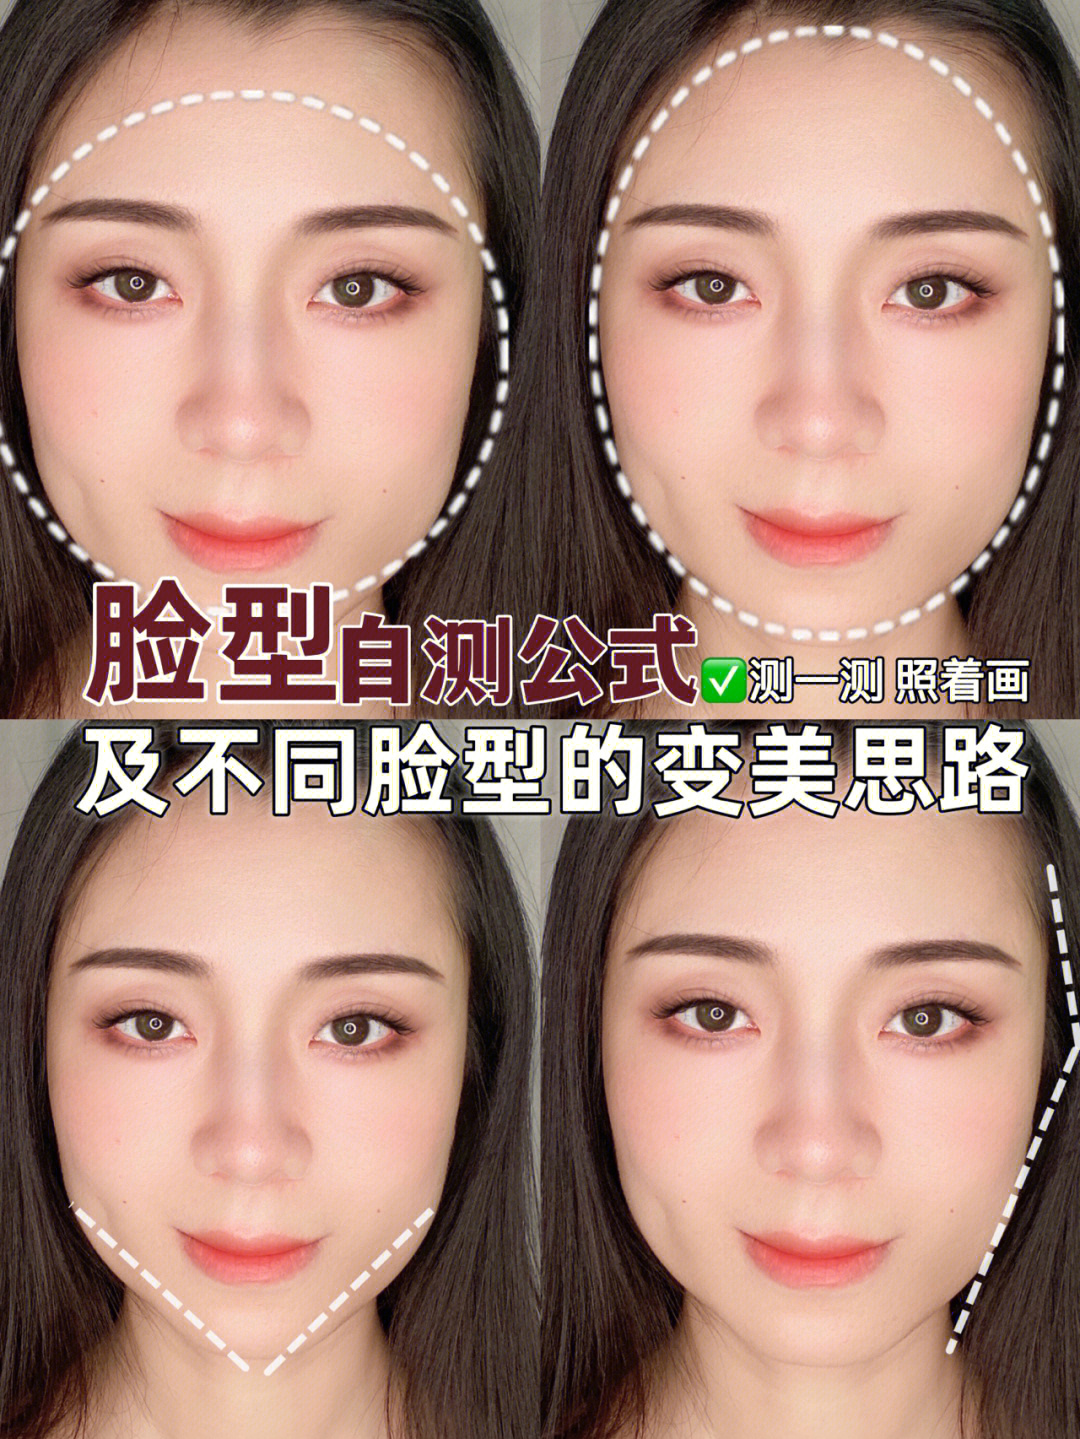 脸型的自测公式还有不同脸型的变美思路先收藏,对着画叭#新手化妆技巧